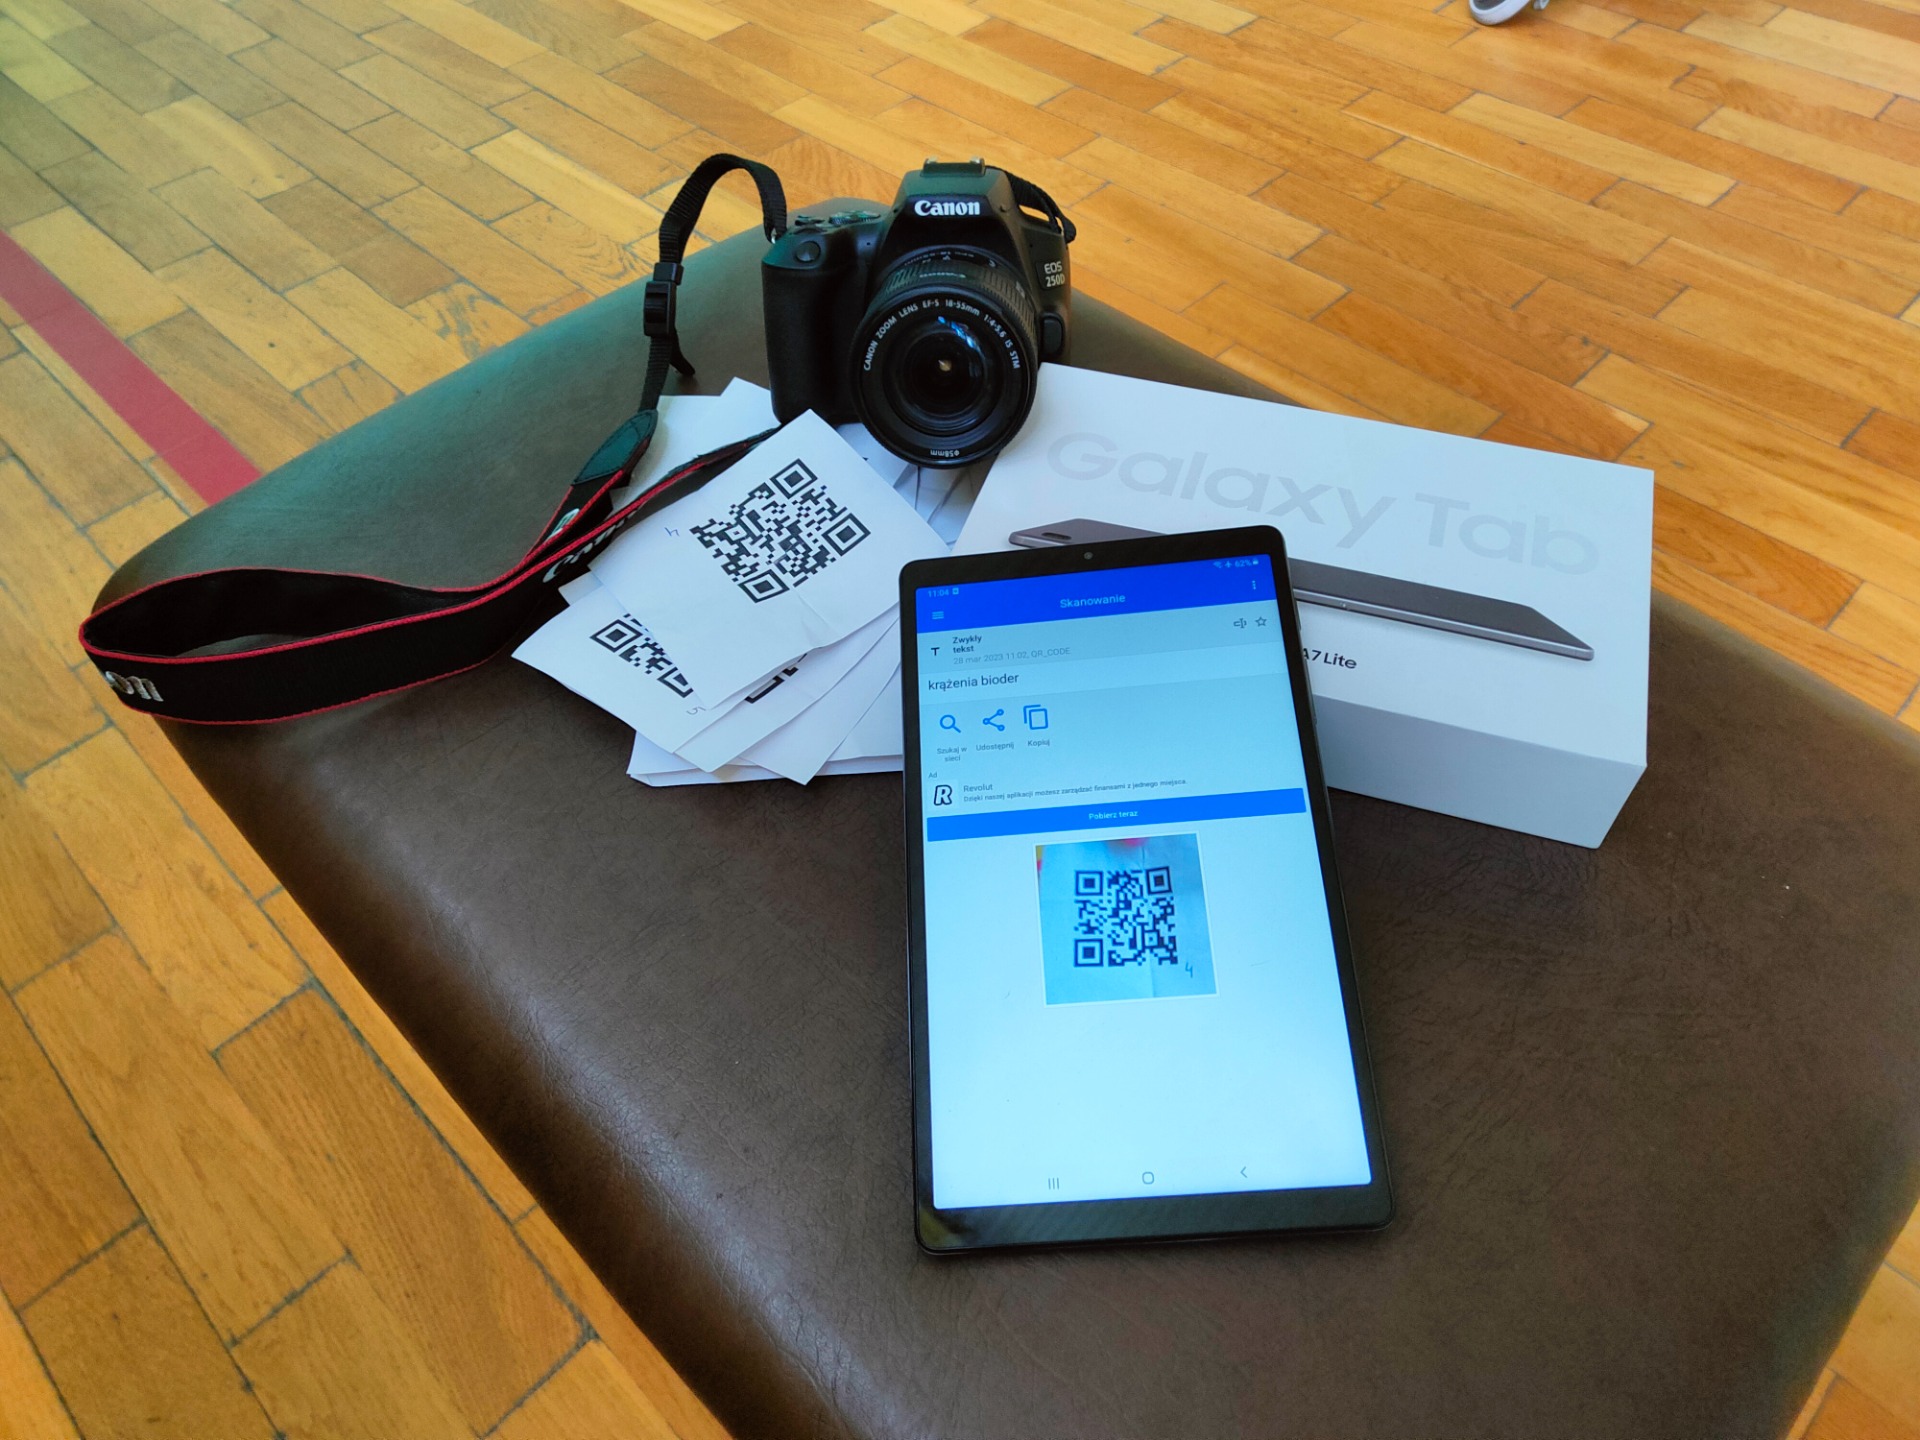 Na zdjęciu znajduje się aparat fotograficzny, kartki z kodami QR oraz tablet Samsung.